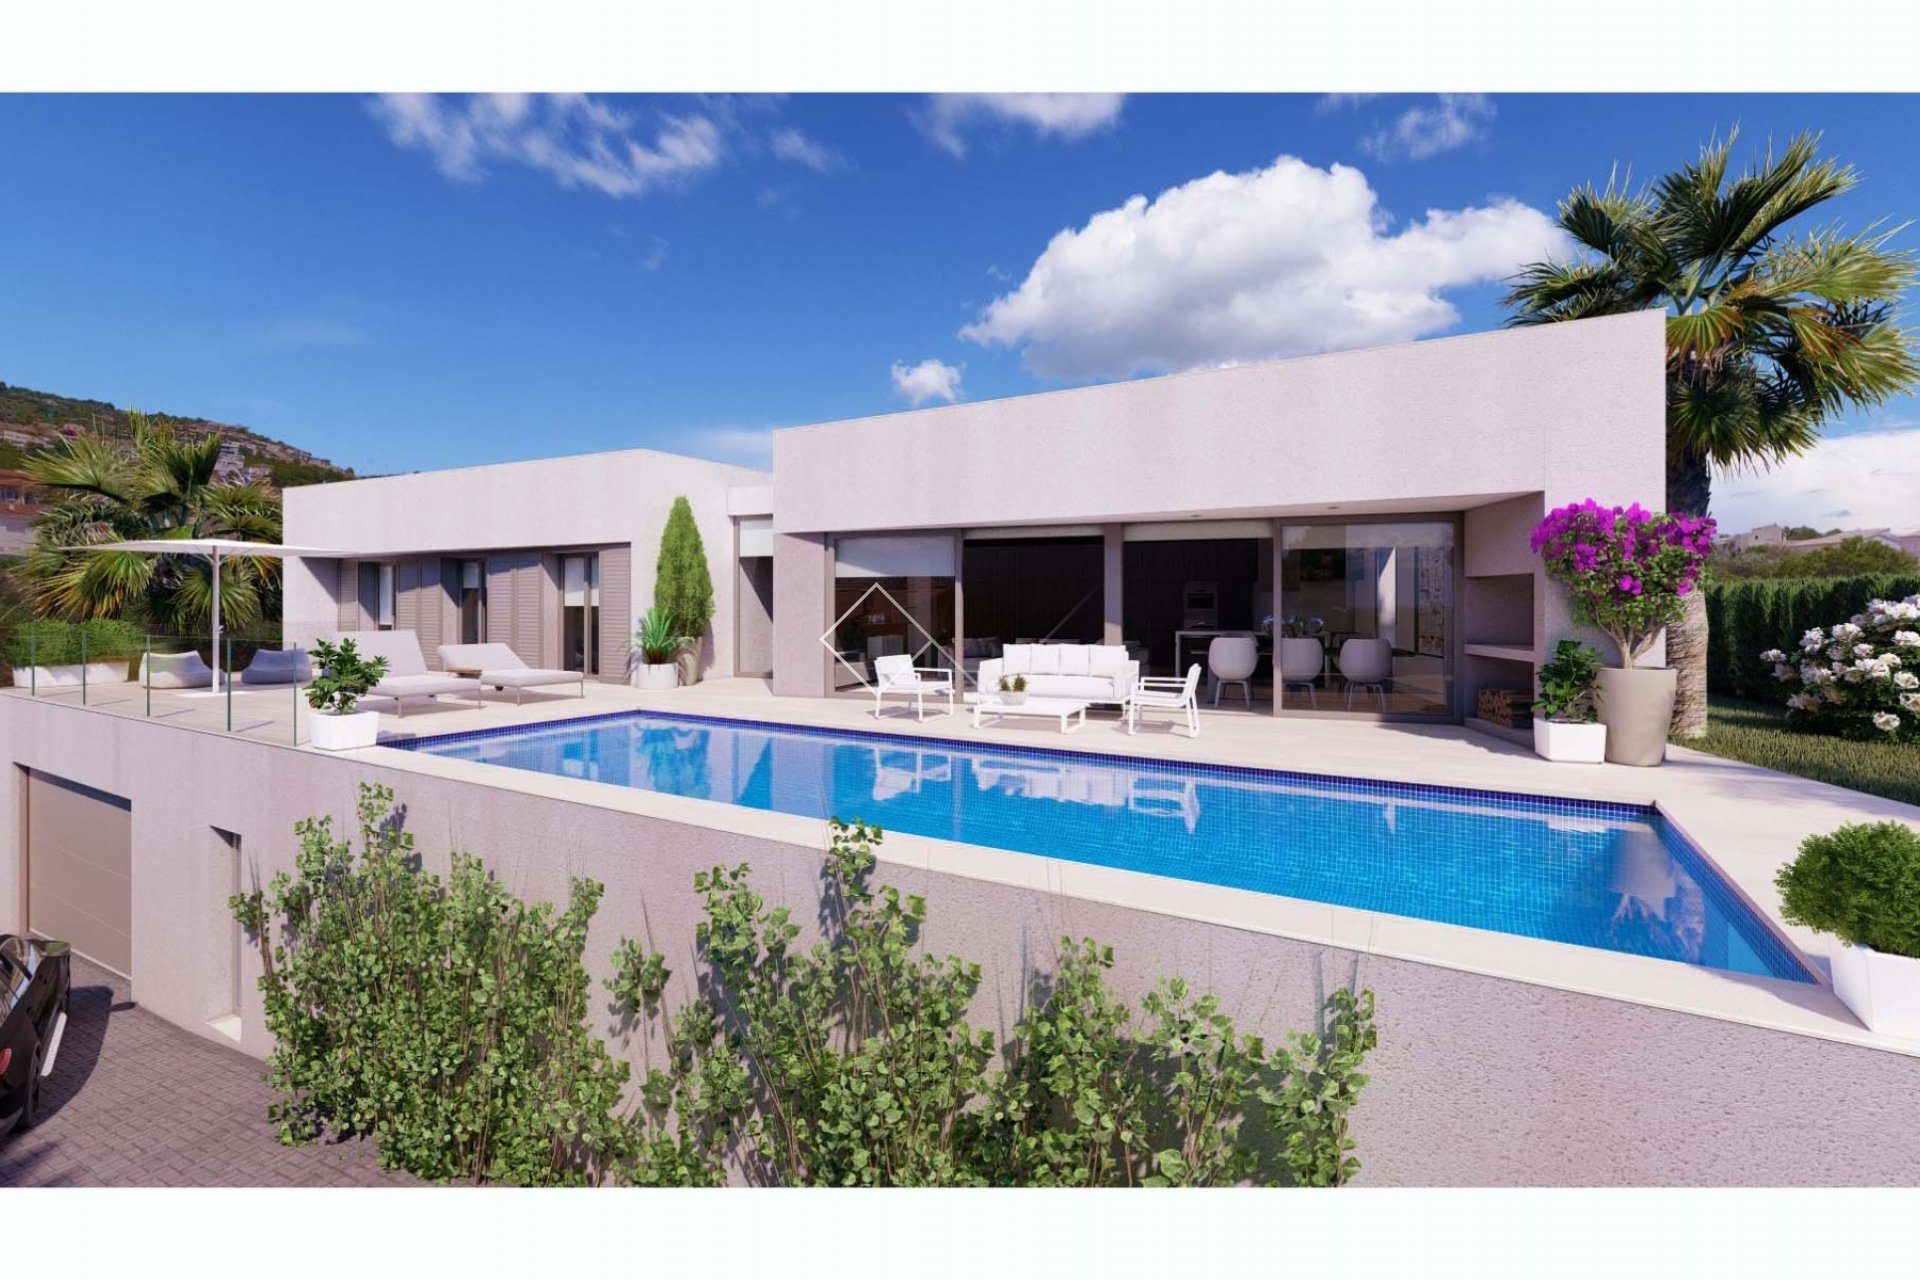 Project for new modern design villa in Gran Sol, Calpe